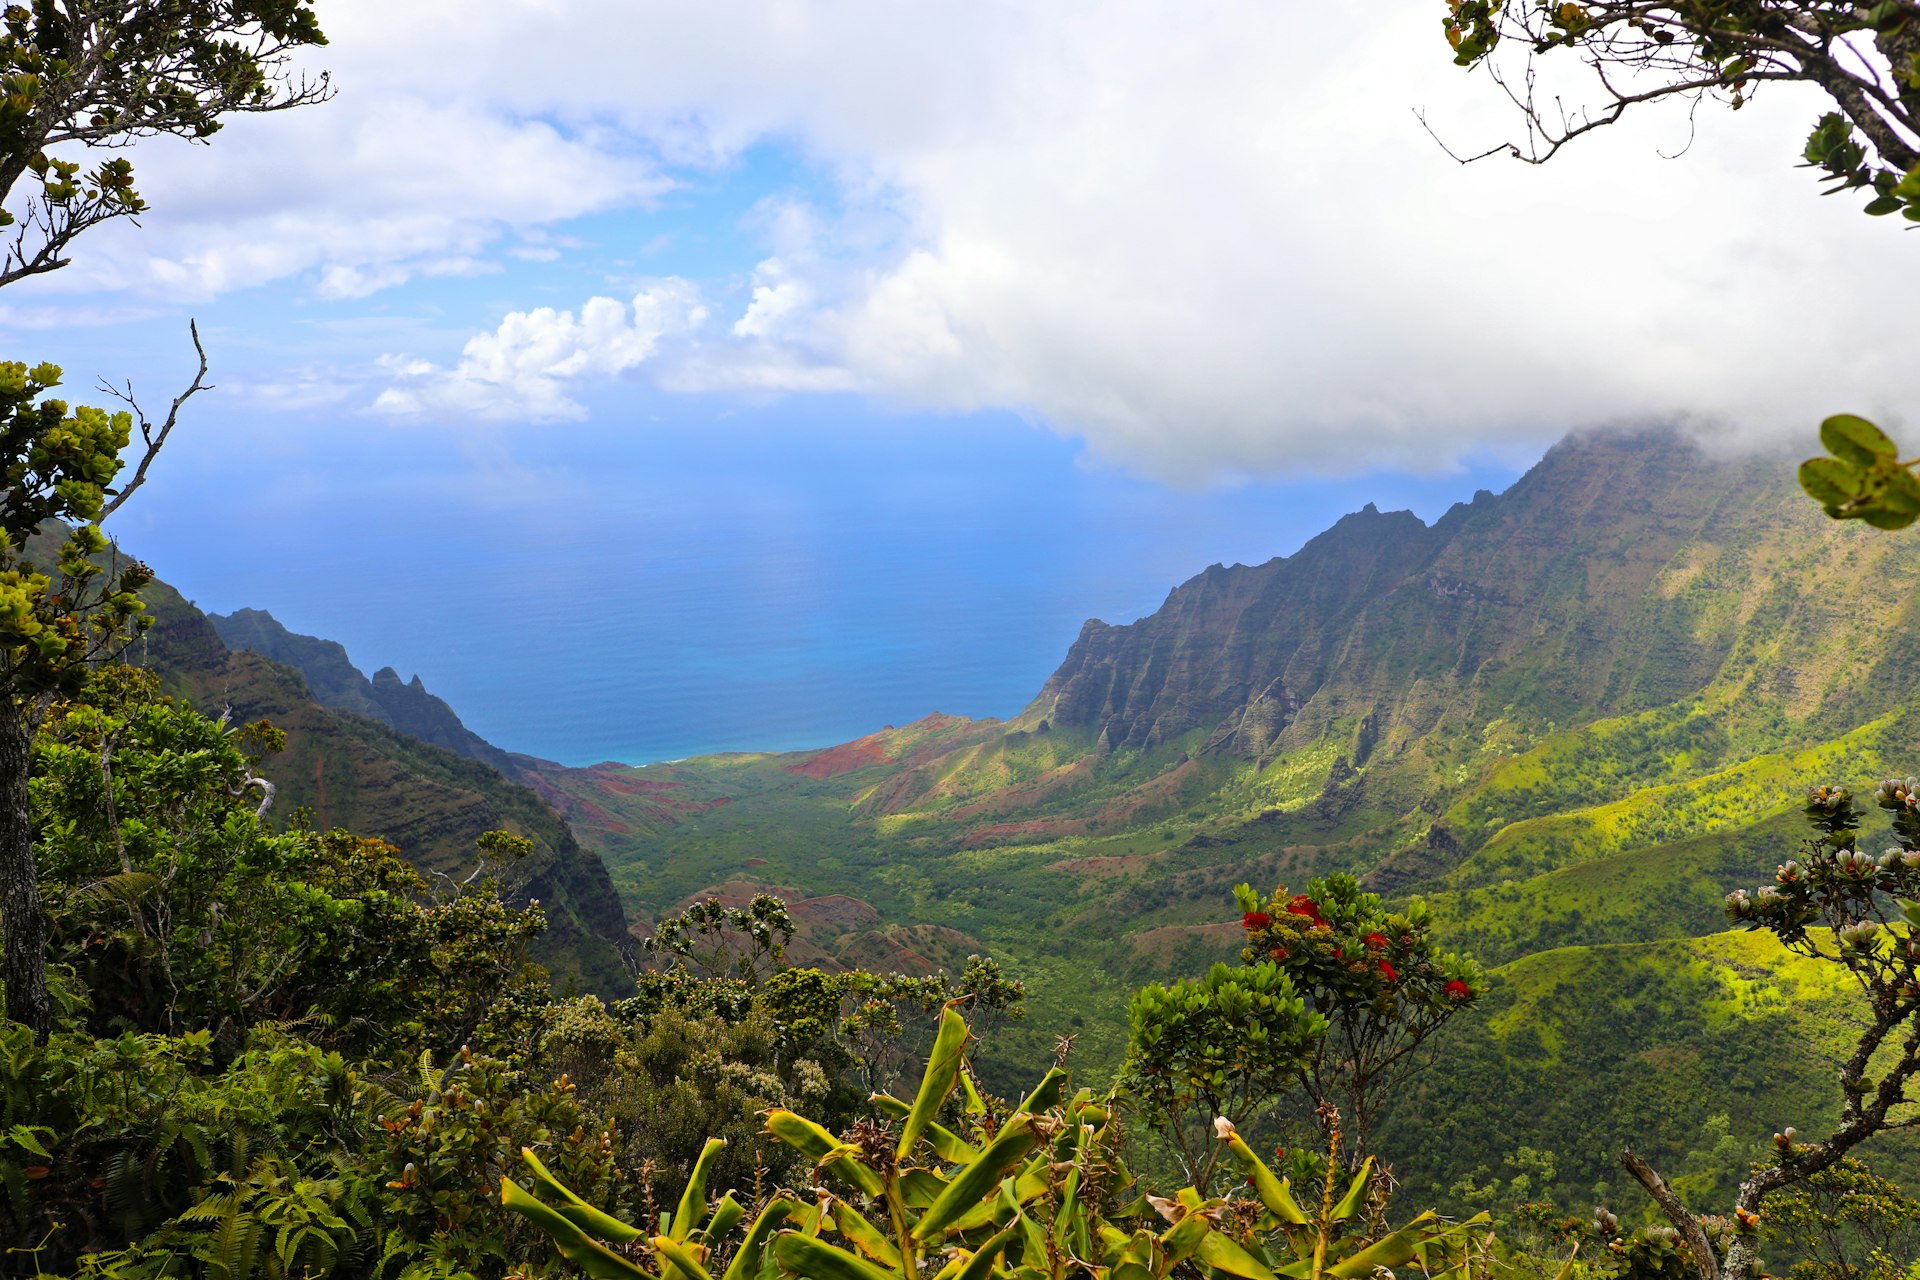 Na Pali Coastline, Pu'u O Kila overlook, Waimea Canyon State Park, Koke'e State Park, Kauai, Hawaii